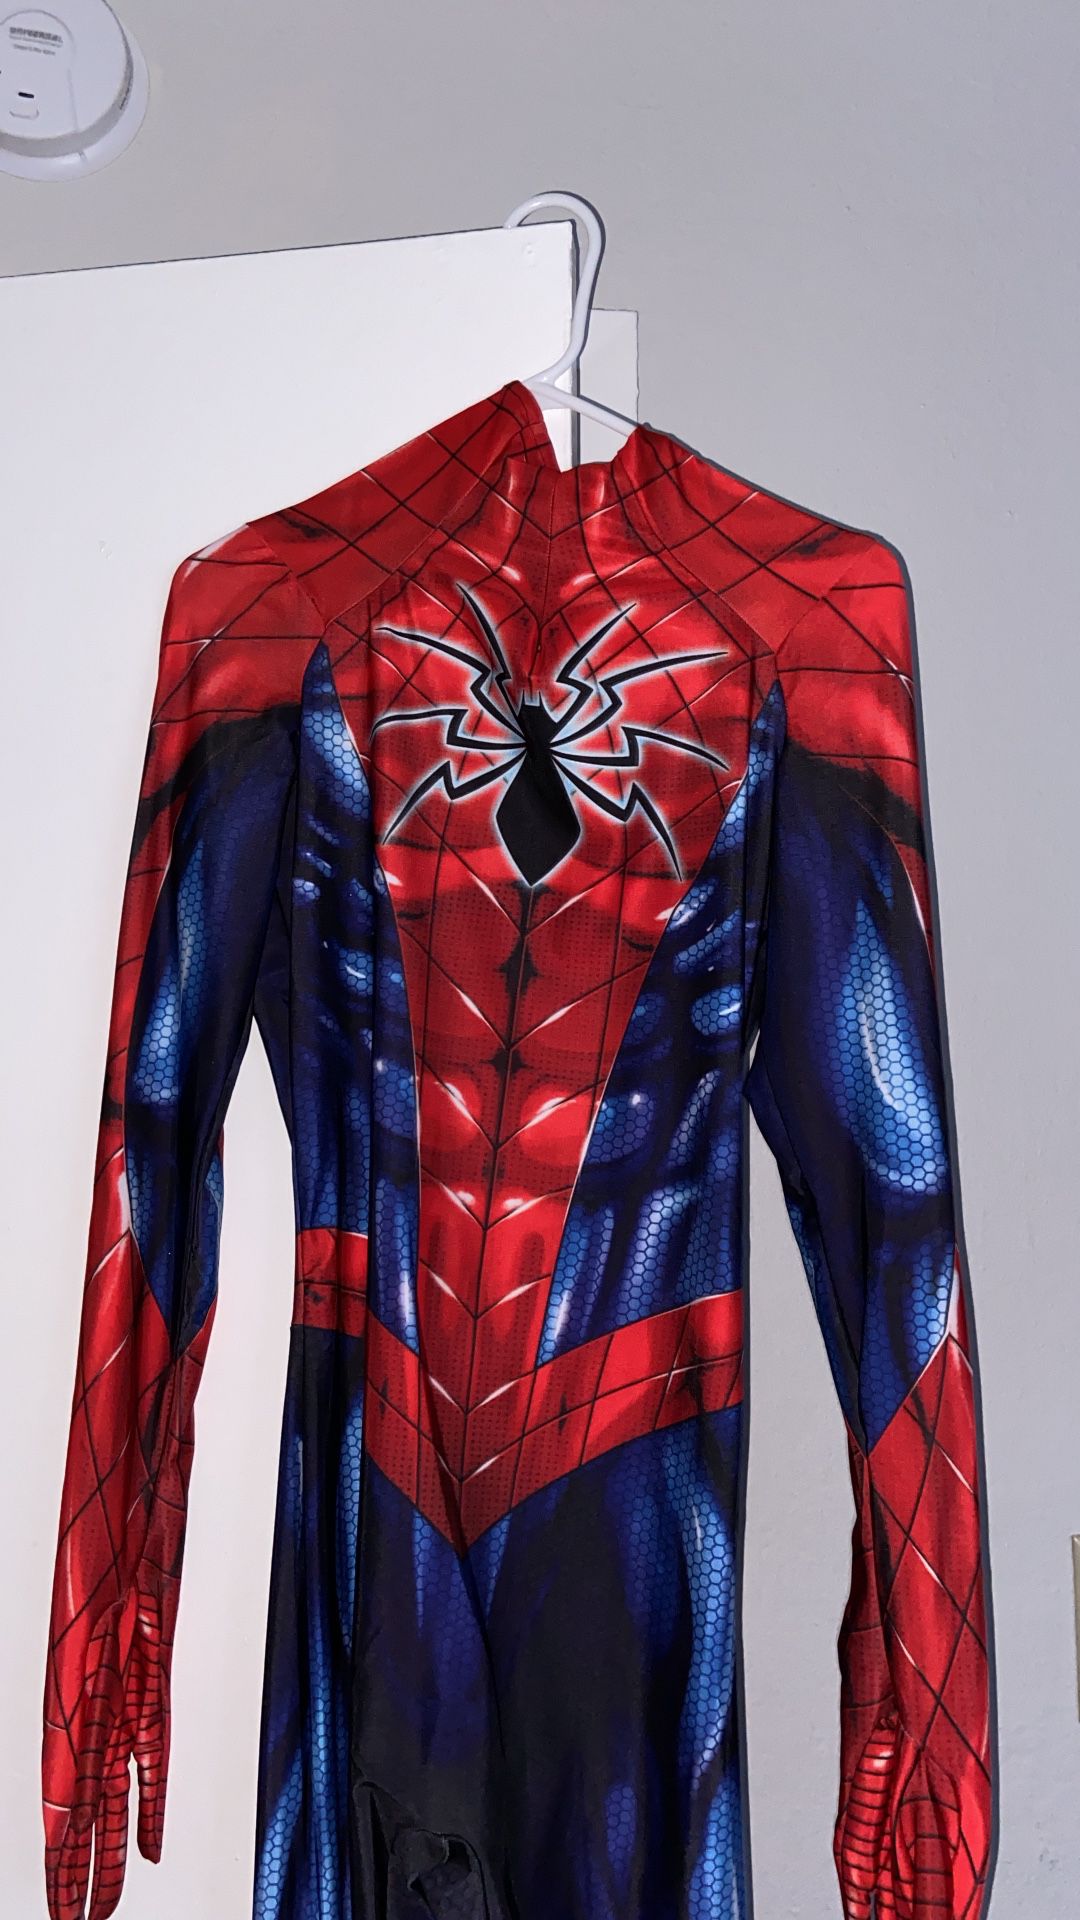 Spider-man suit/Costume